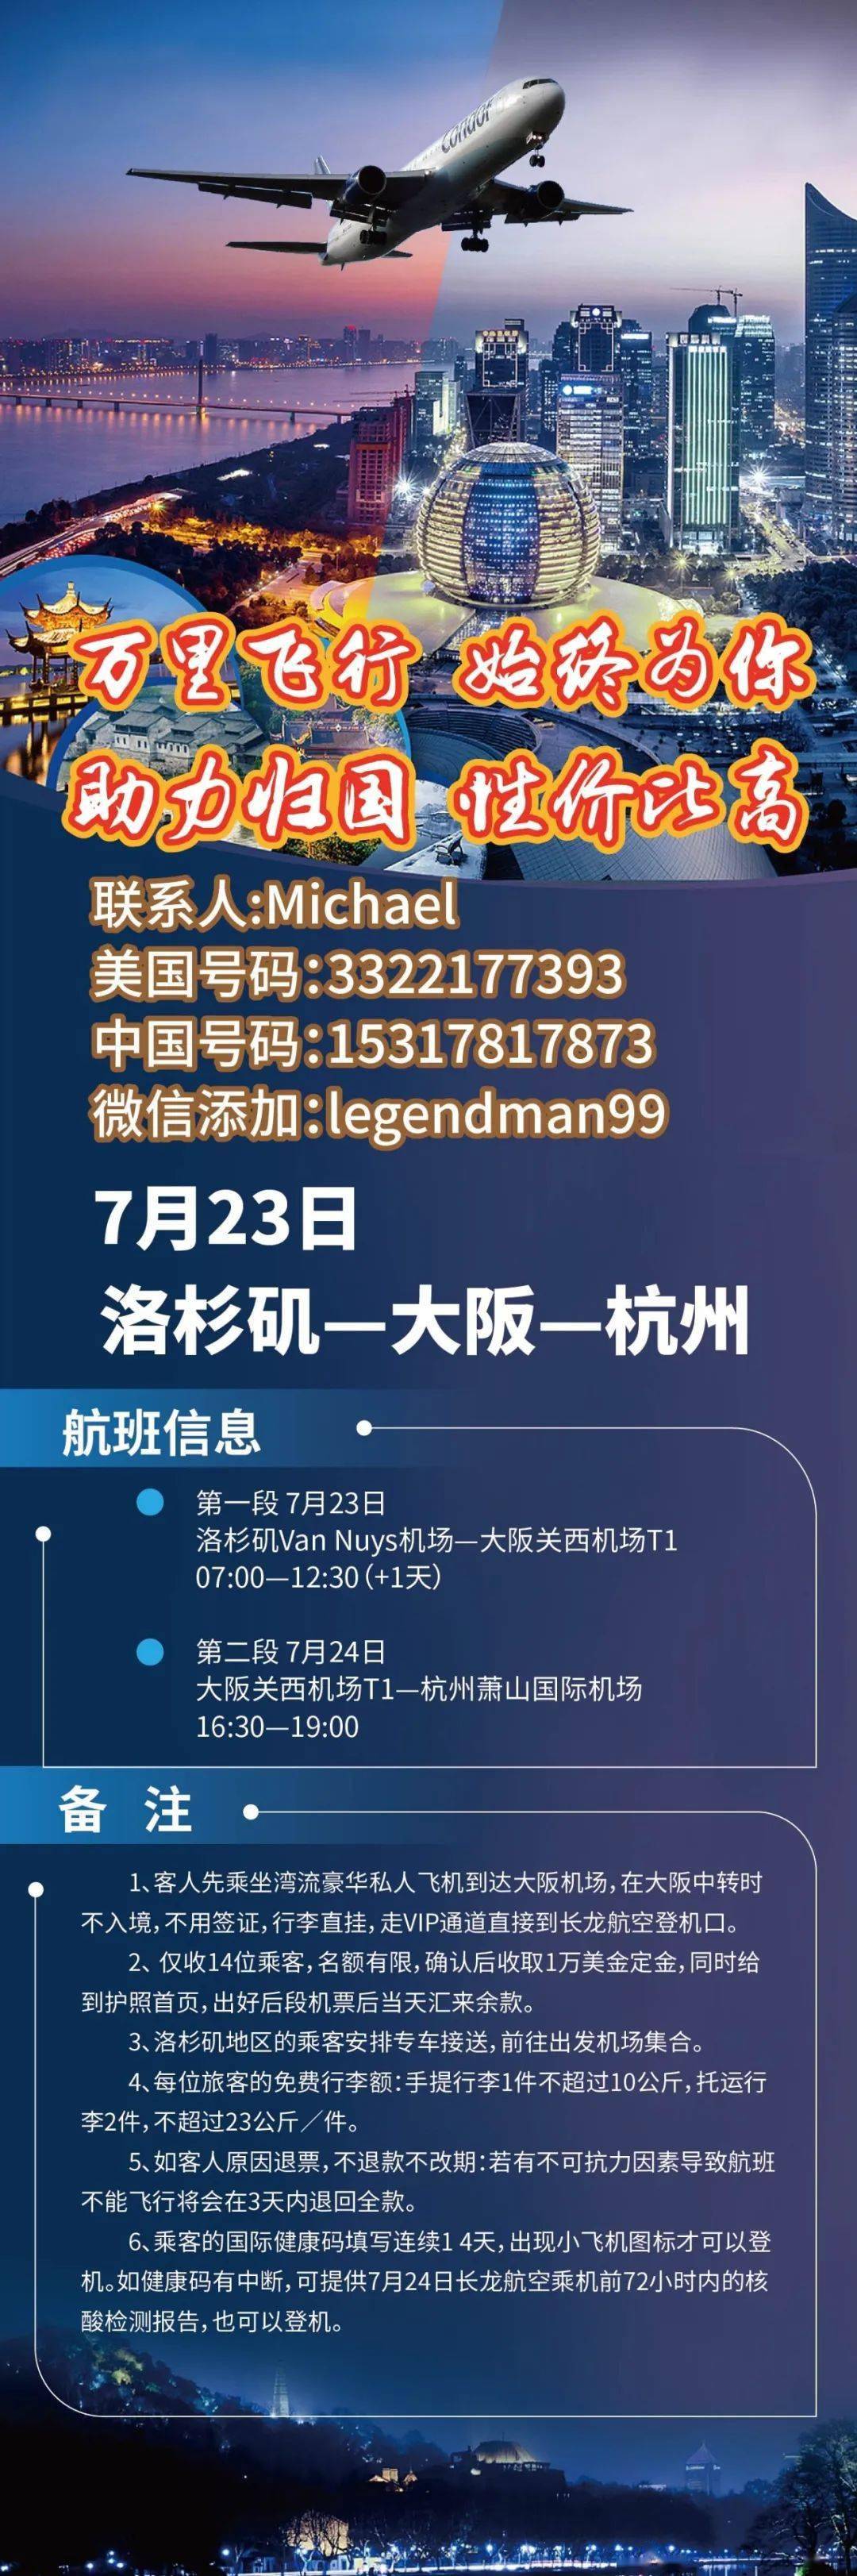 民航票务信息:ua 有票7/ 22 25 29 from 三藩 to 上海浦东国际机场